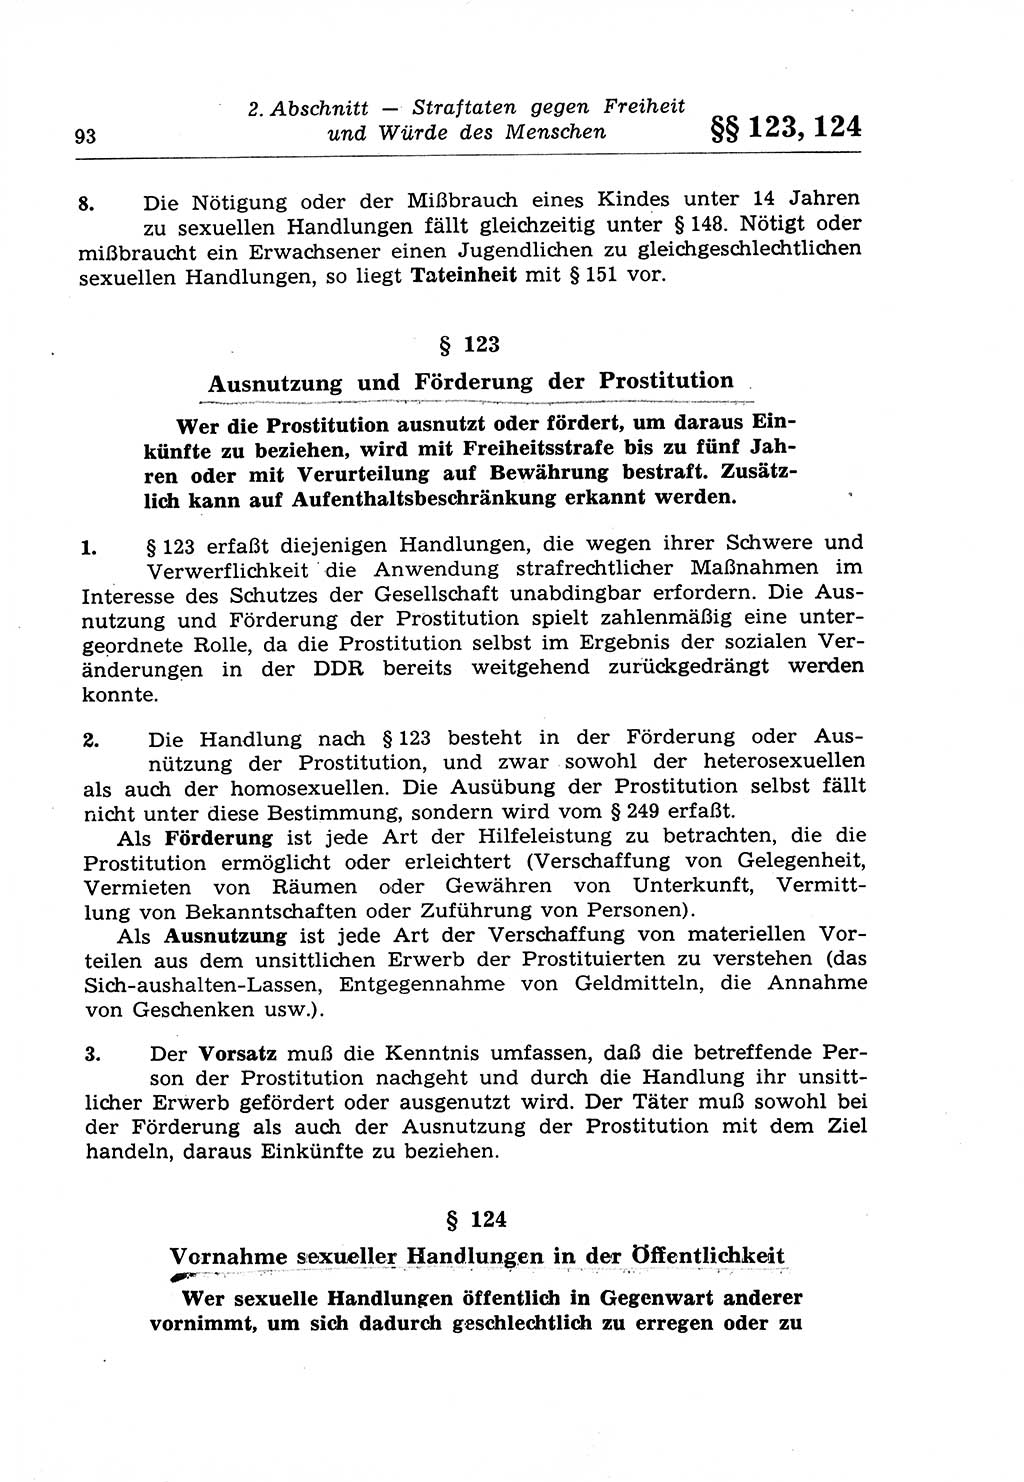 Strafrecht der Deutschen Demokratischen Republik (DDR), Lehrkommentar zum Strafgesetzbuch (StGB), Besonderer Teil 1970, Seite 93 (Strafr. DDR Lehrkomm. StGB BT 1970, S. 93)